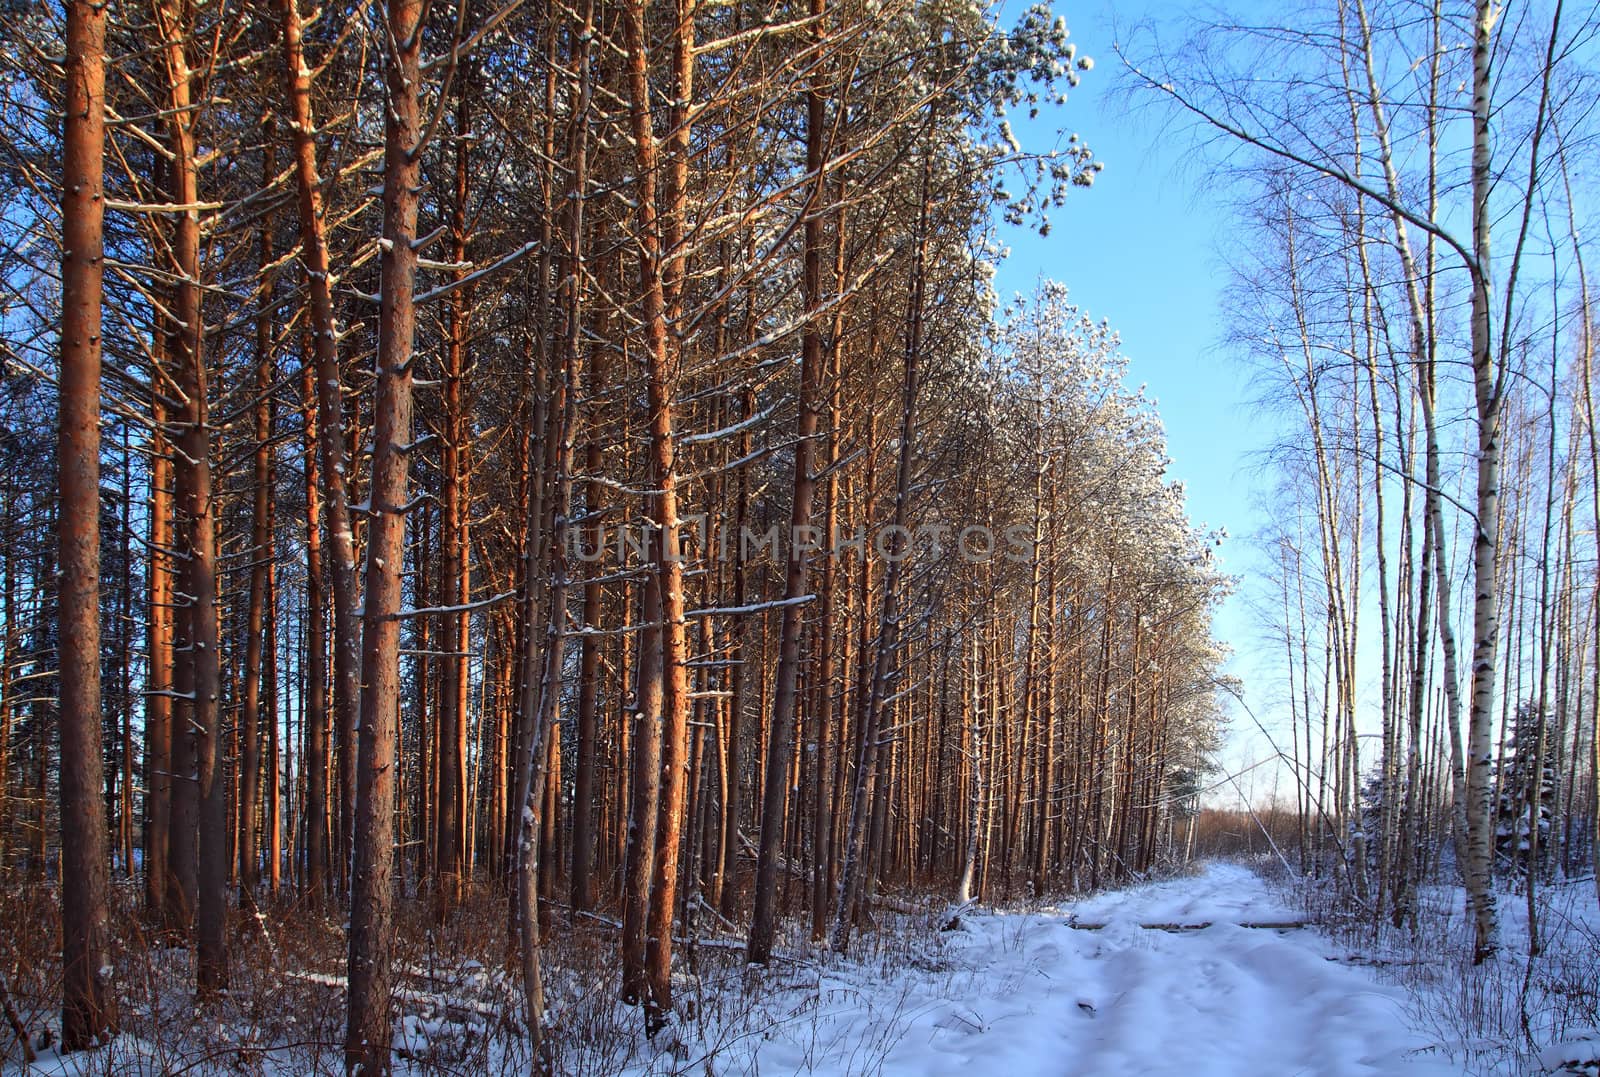 aging rural road in pine wood by basel101658